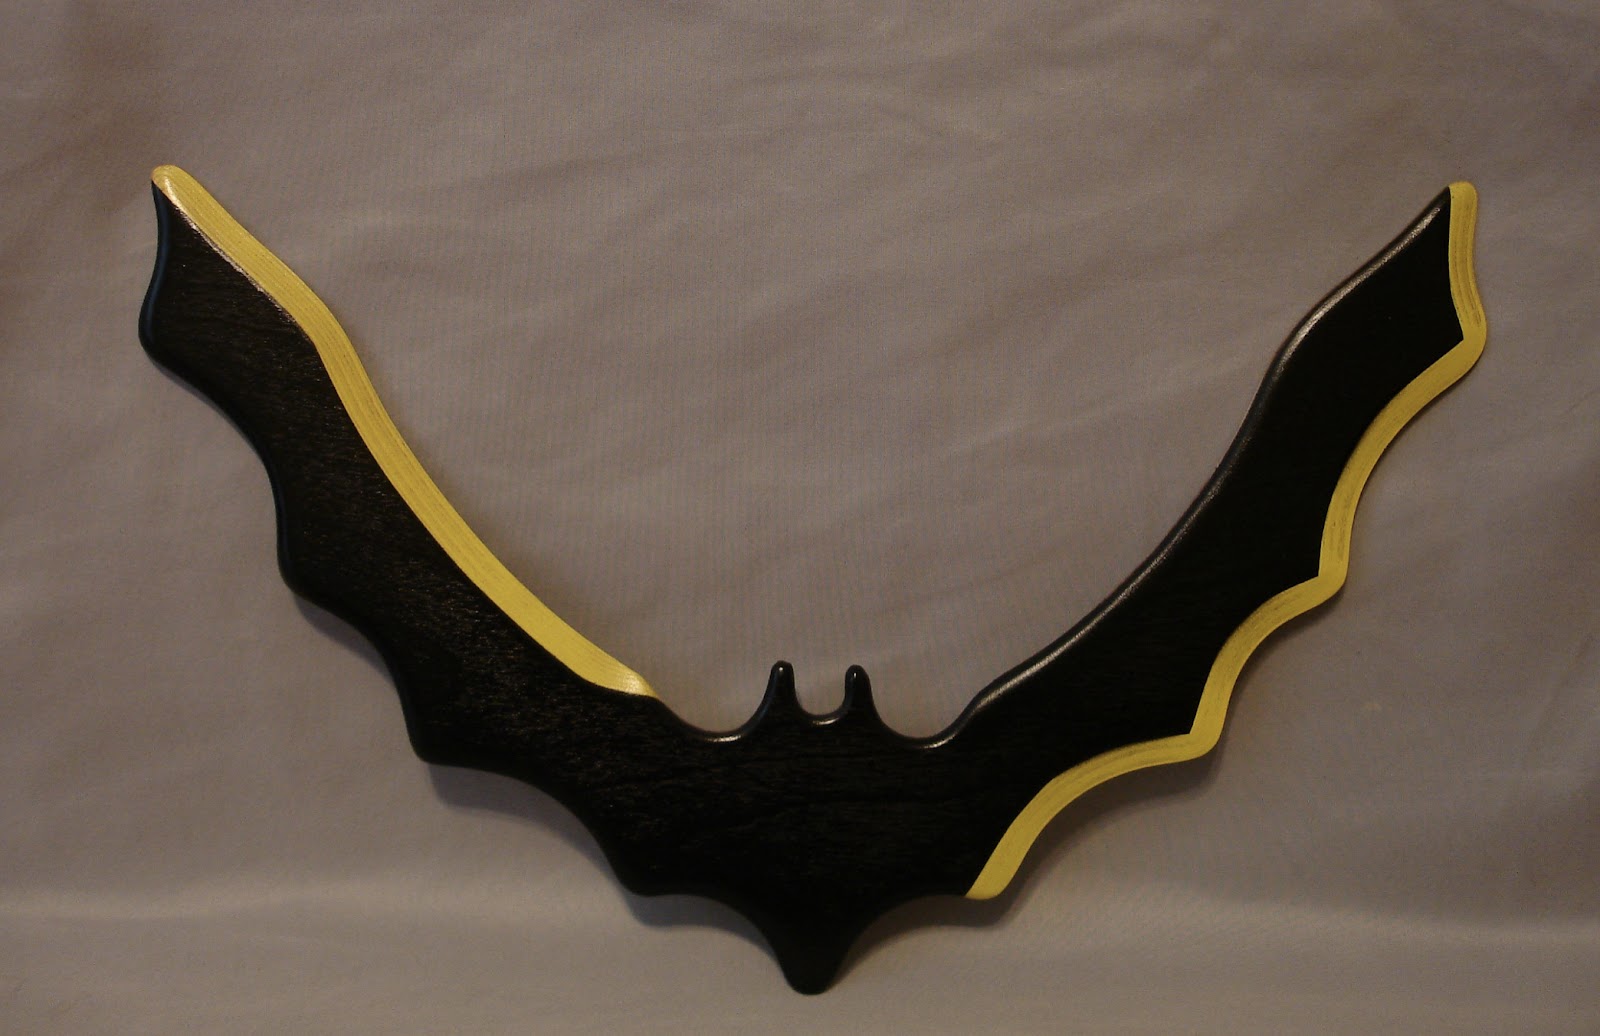 buy a batarang boomerang